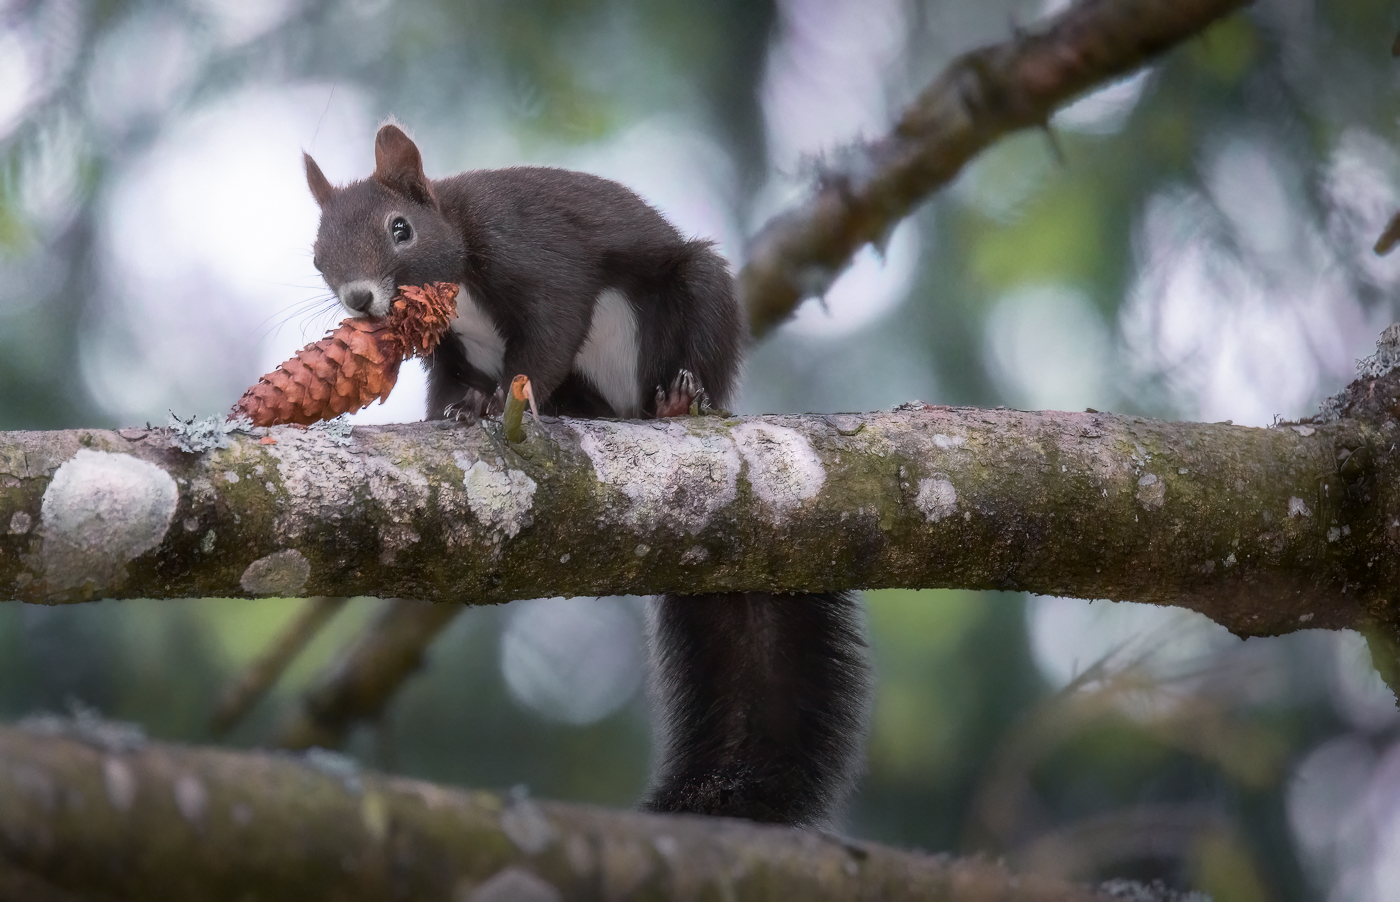 Uno scoiattolo comune (Sciurus vulgaris) non ci pensa proprio a lasciare il suo pasto. Alpi Giulie, Italia.